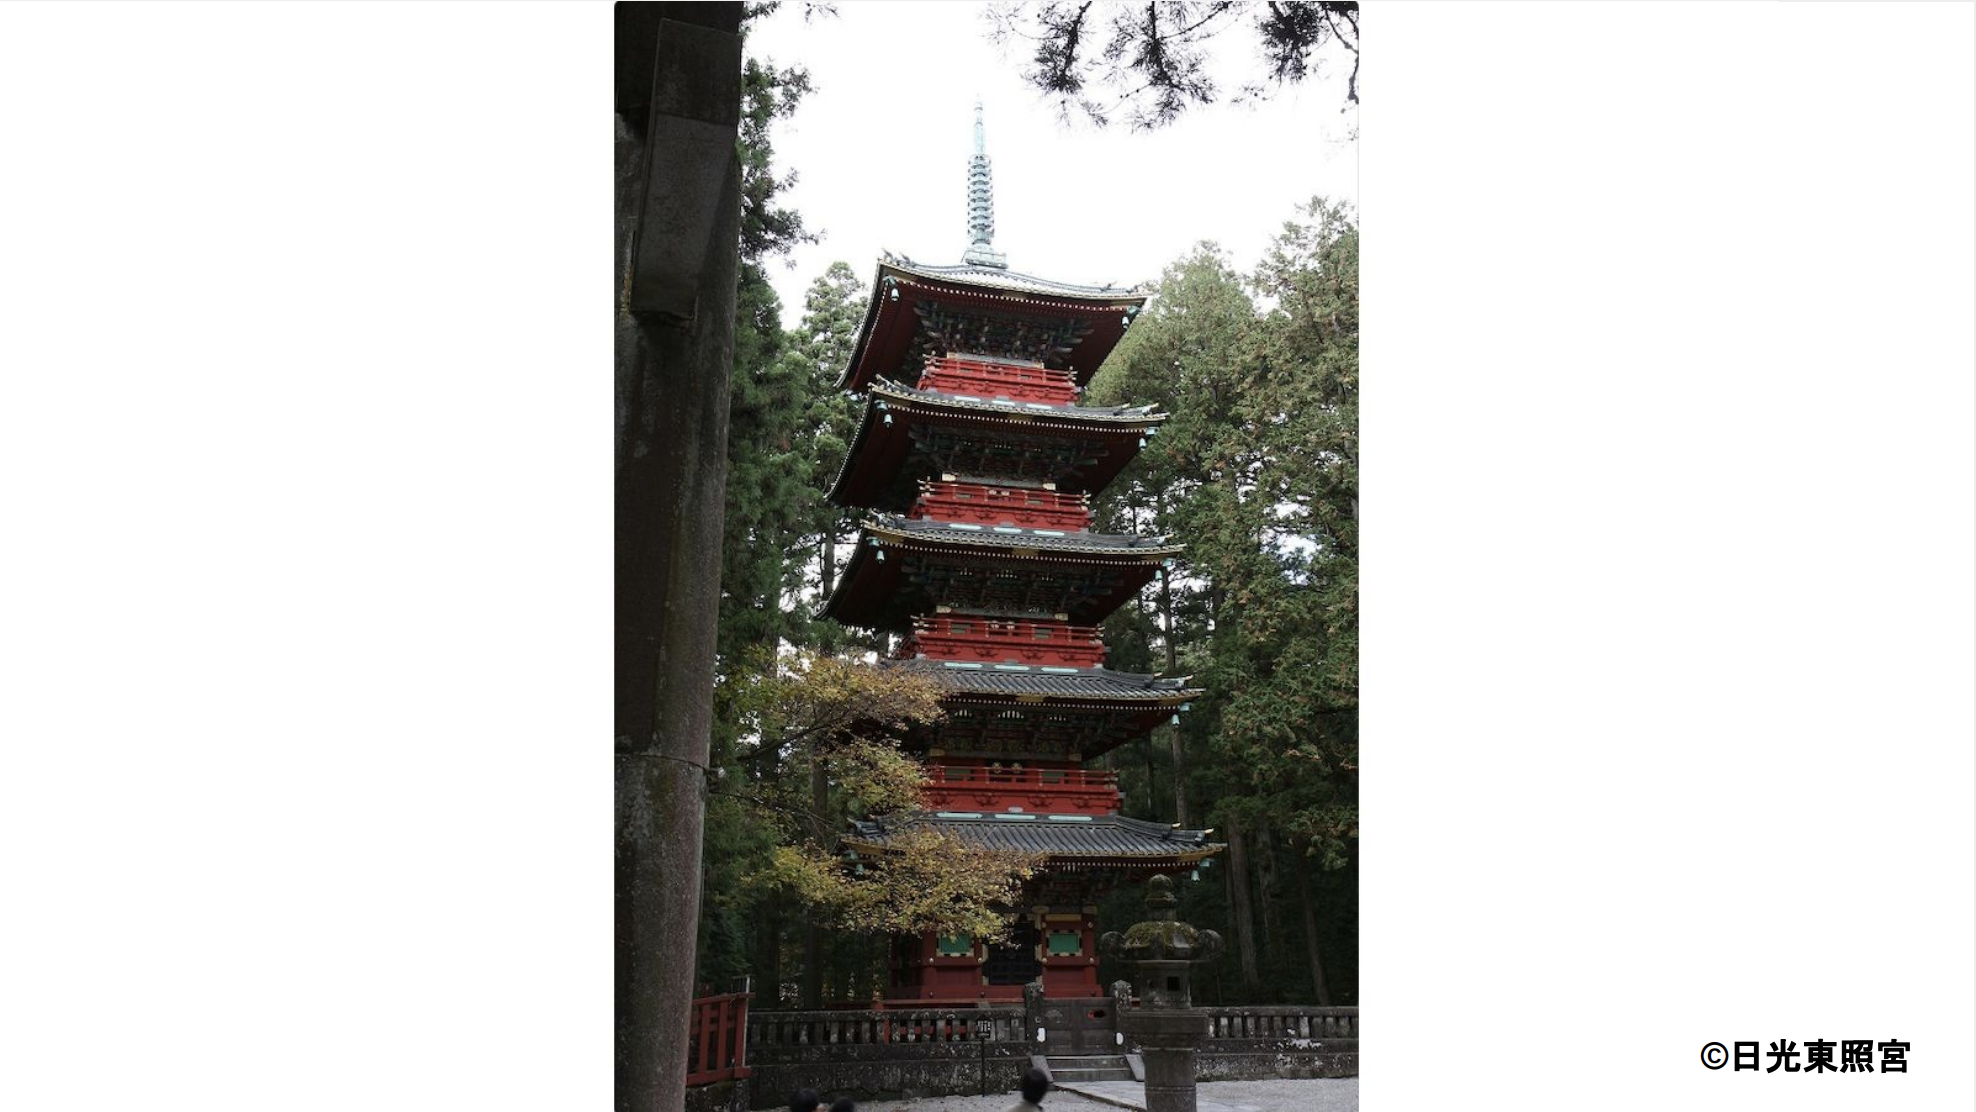 高さ36mの五重塔。標高を合わせた高さは東京スカイツリーと同じ634m